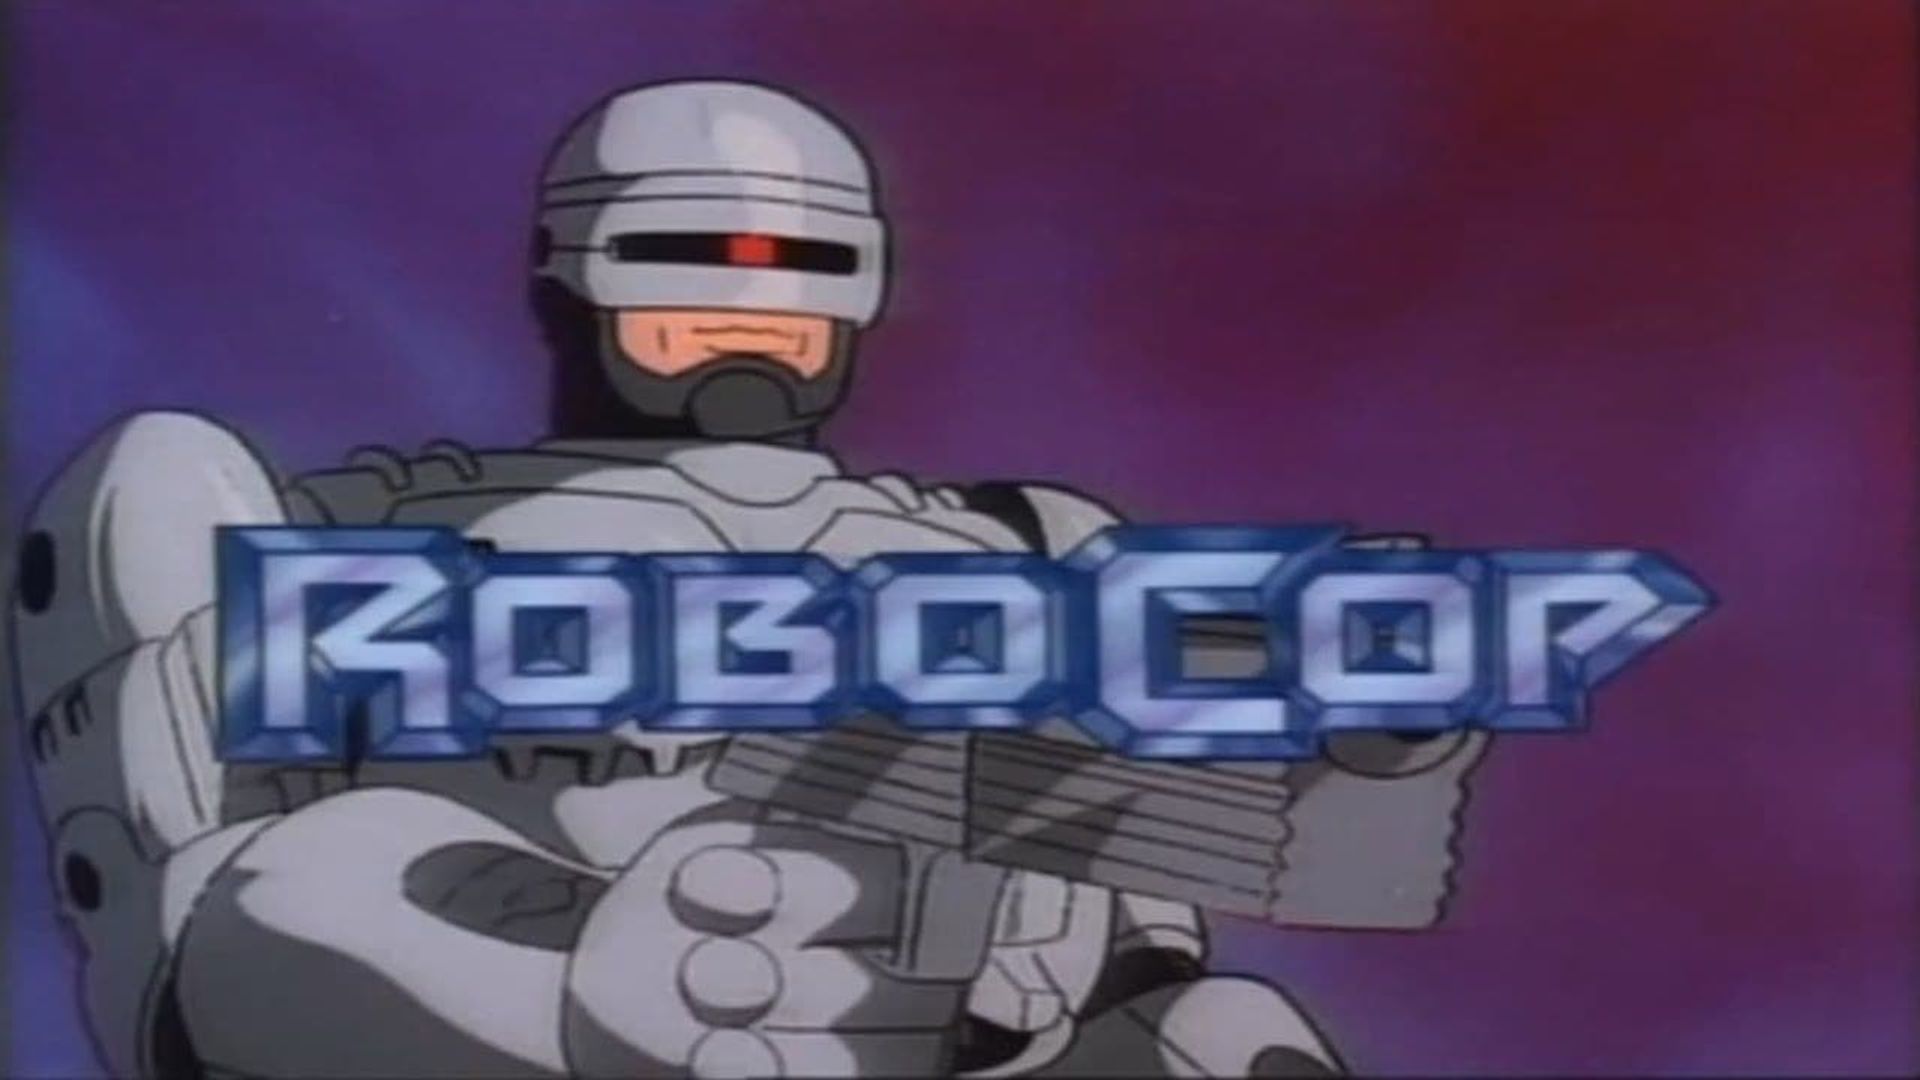 RoboCop background